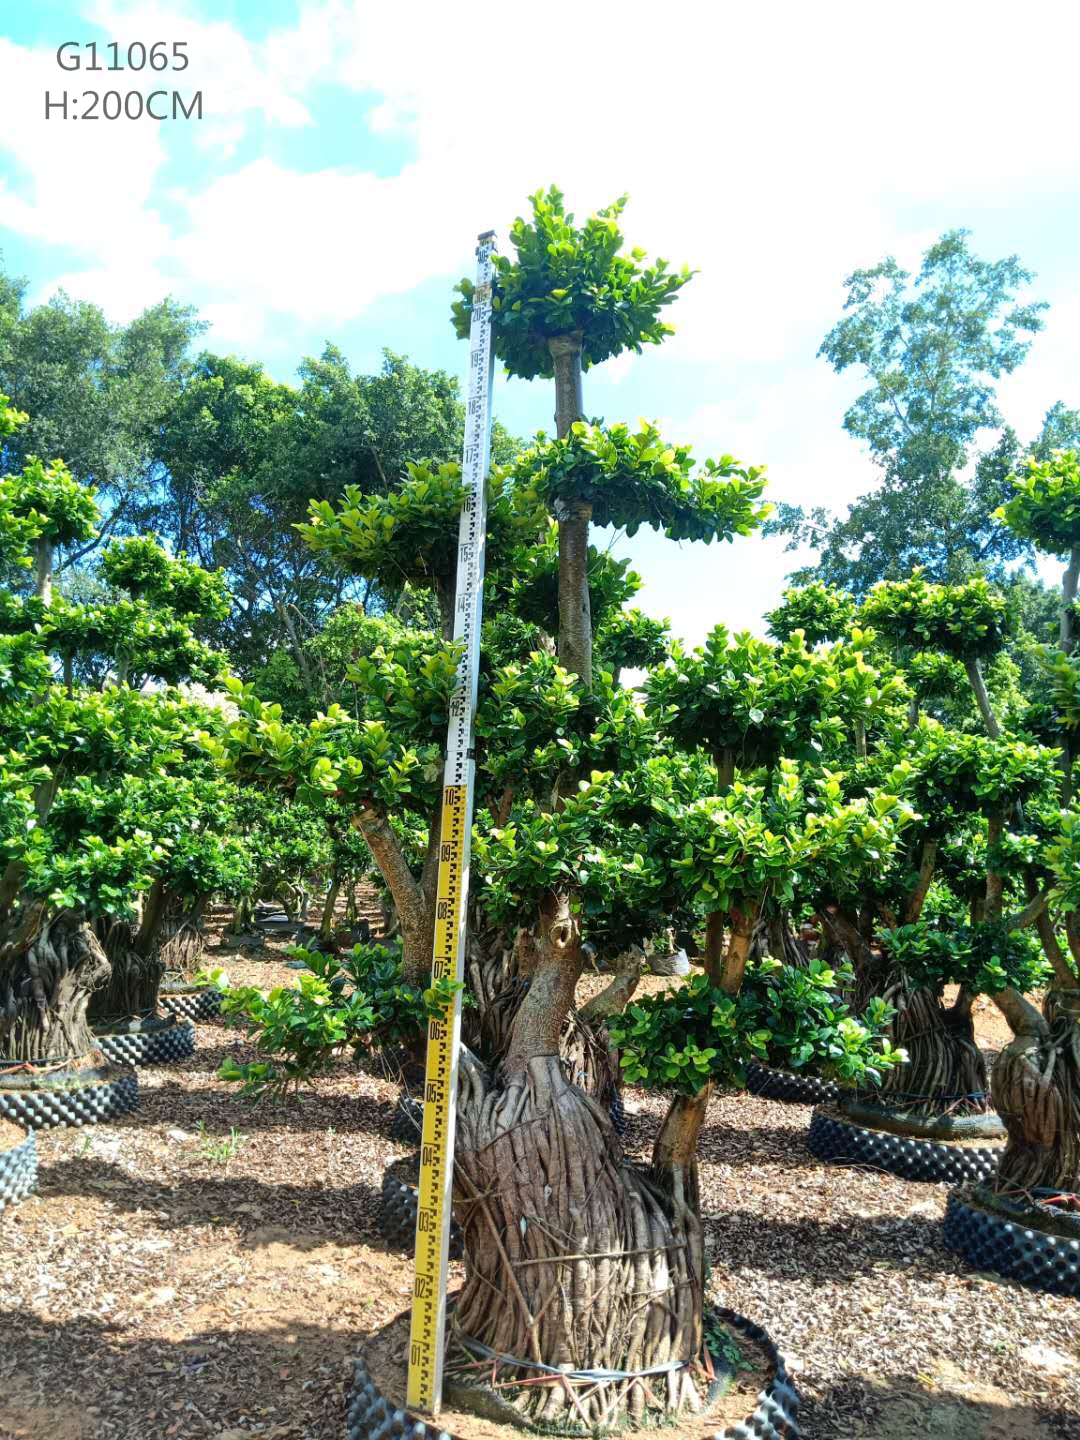 H150-210cm Ficus Air Root S Stærð Ficus Microcarpa Ficus Bonsai með góðu gæðum